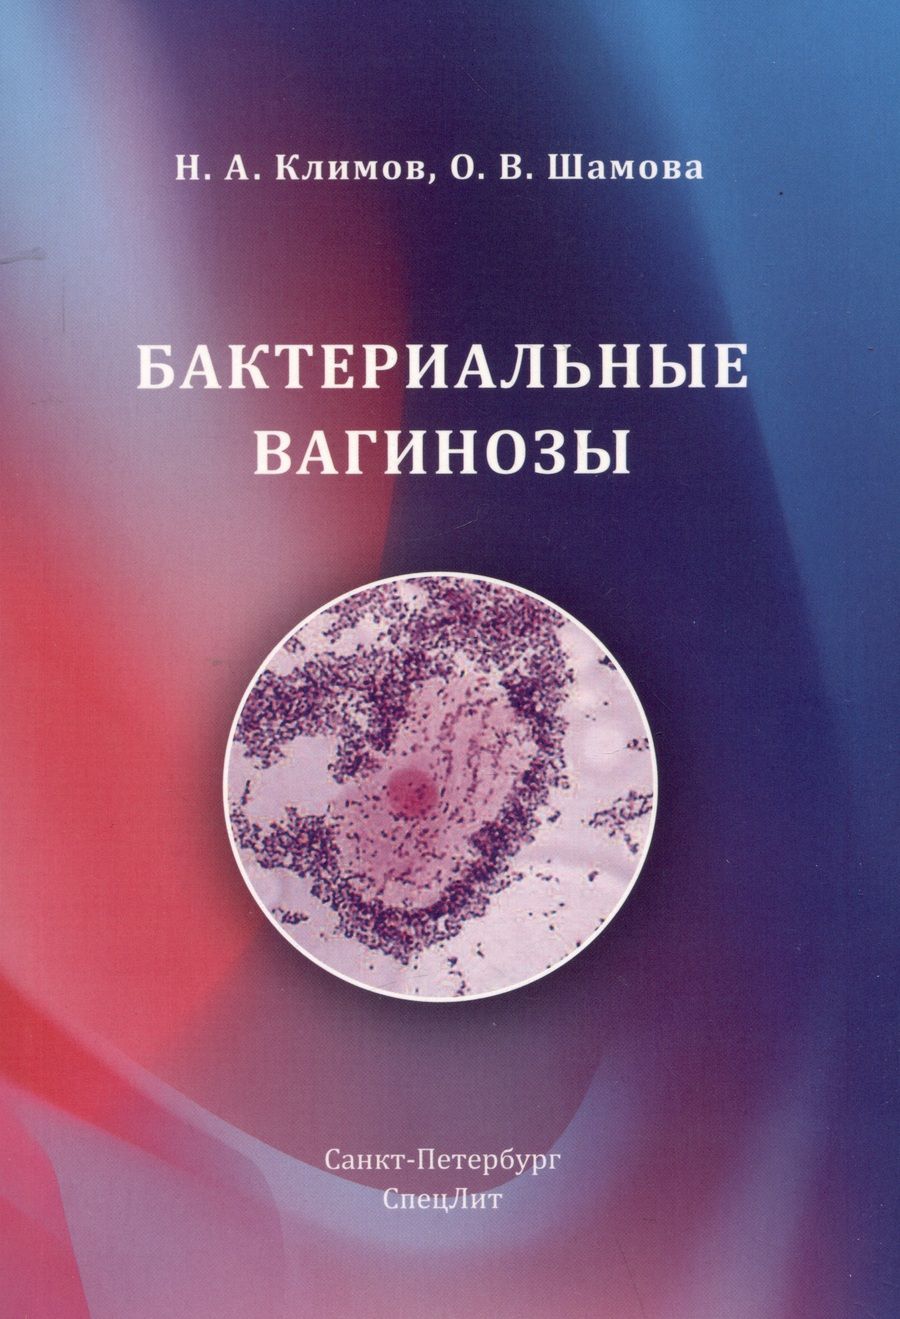 Обложка книги "Климов, Шамова: Бактериальные вагинозы"